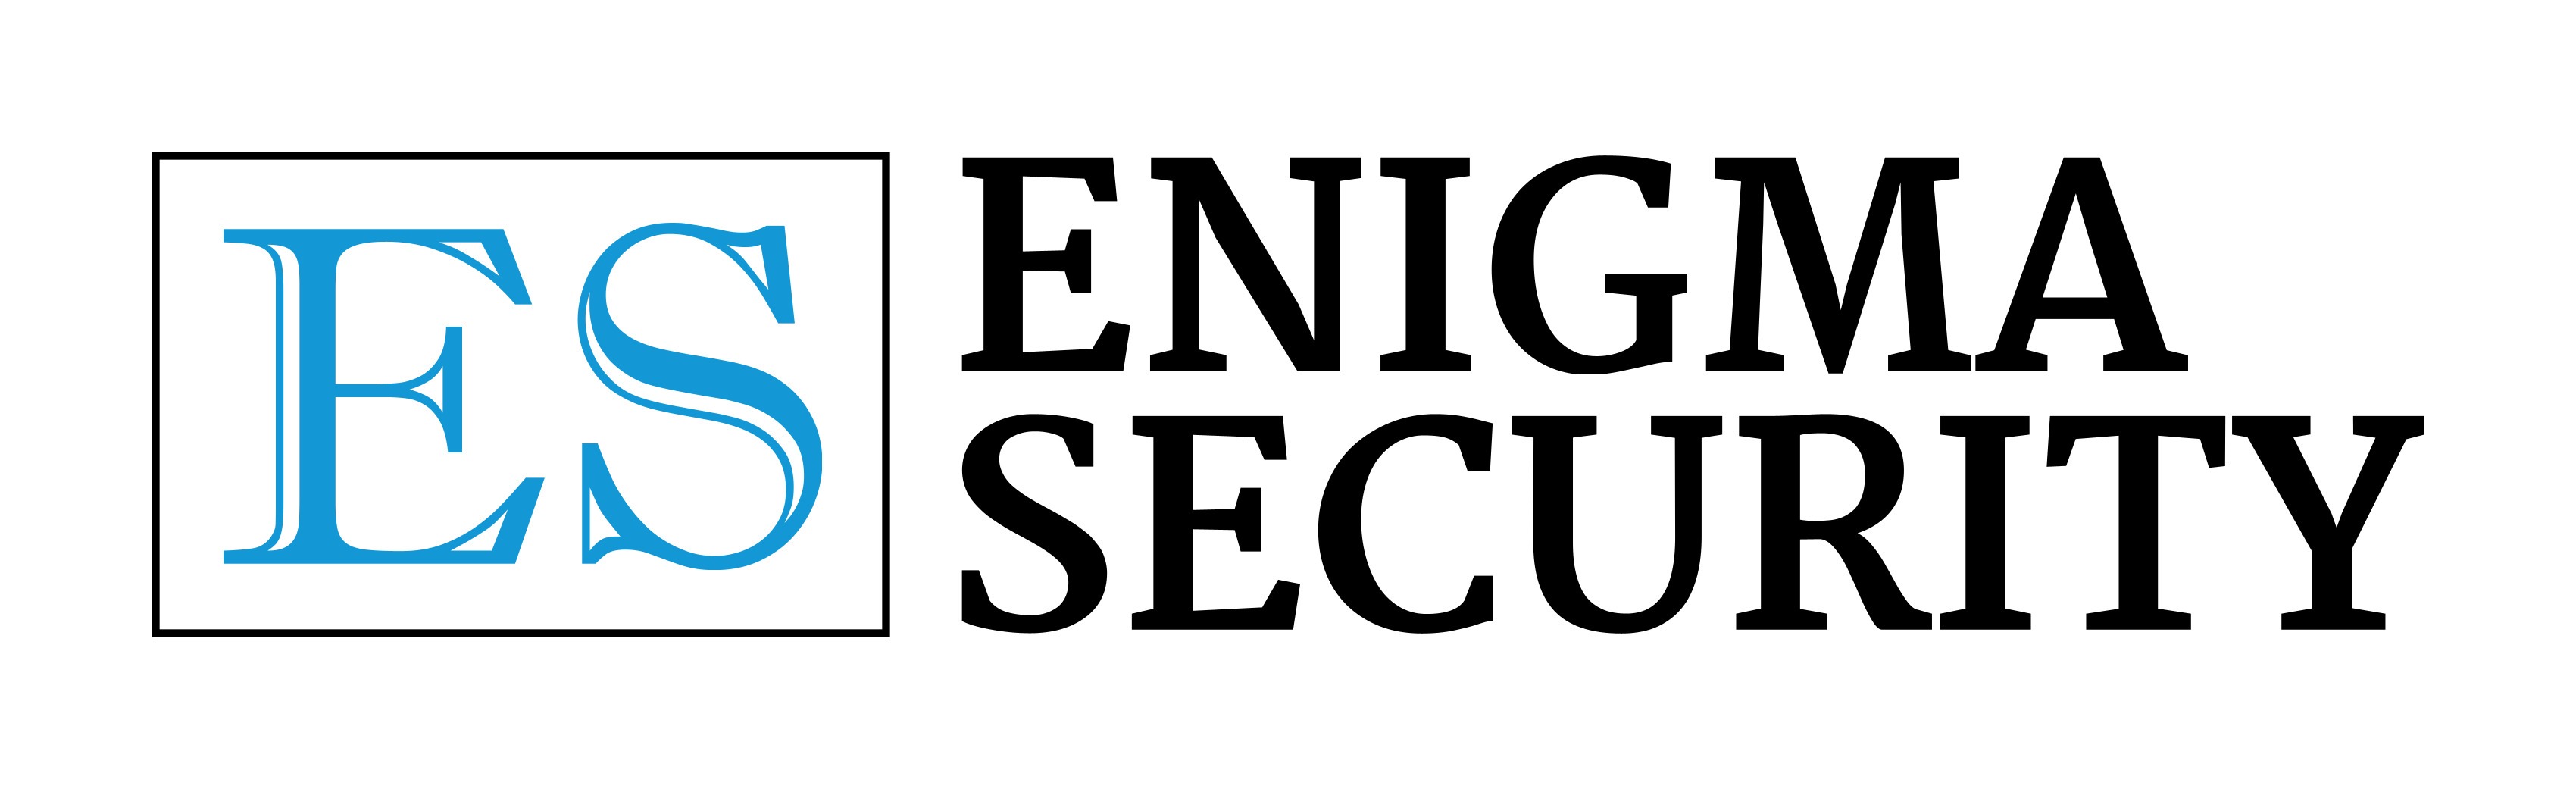 Tienda Enigma Security